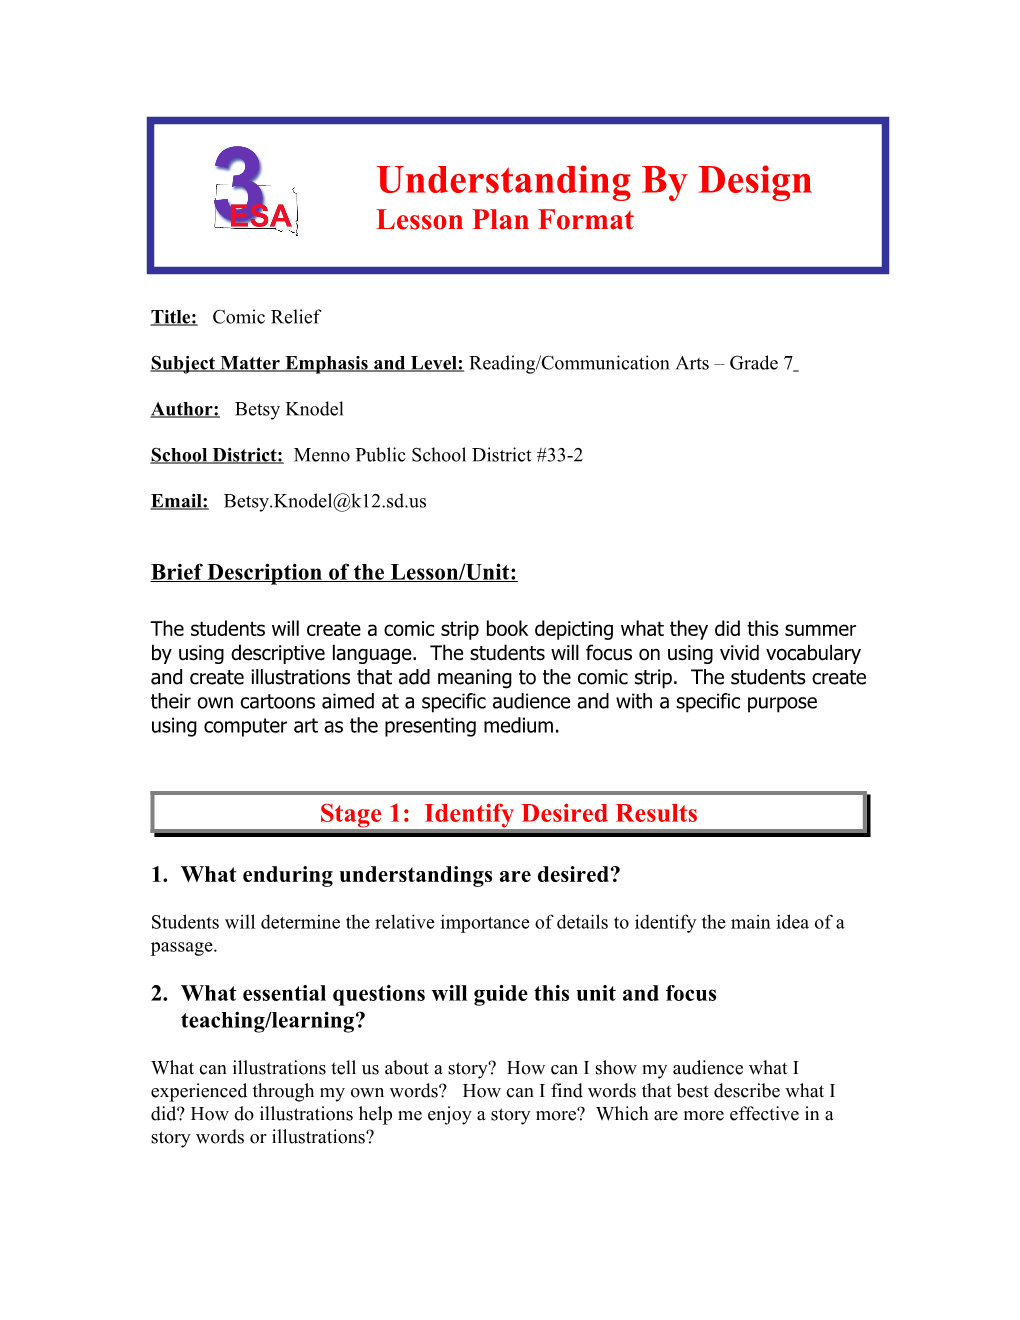 Understanding by Design s1